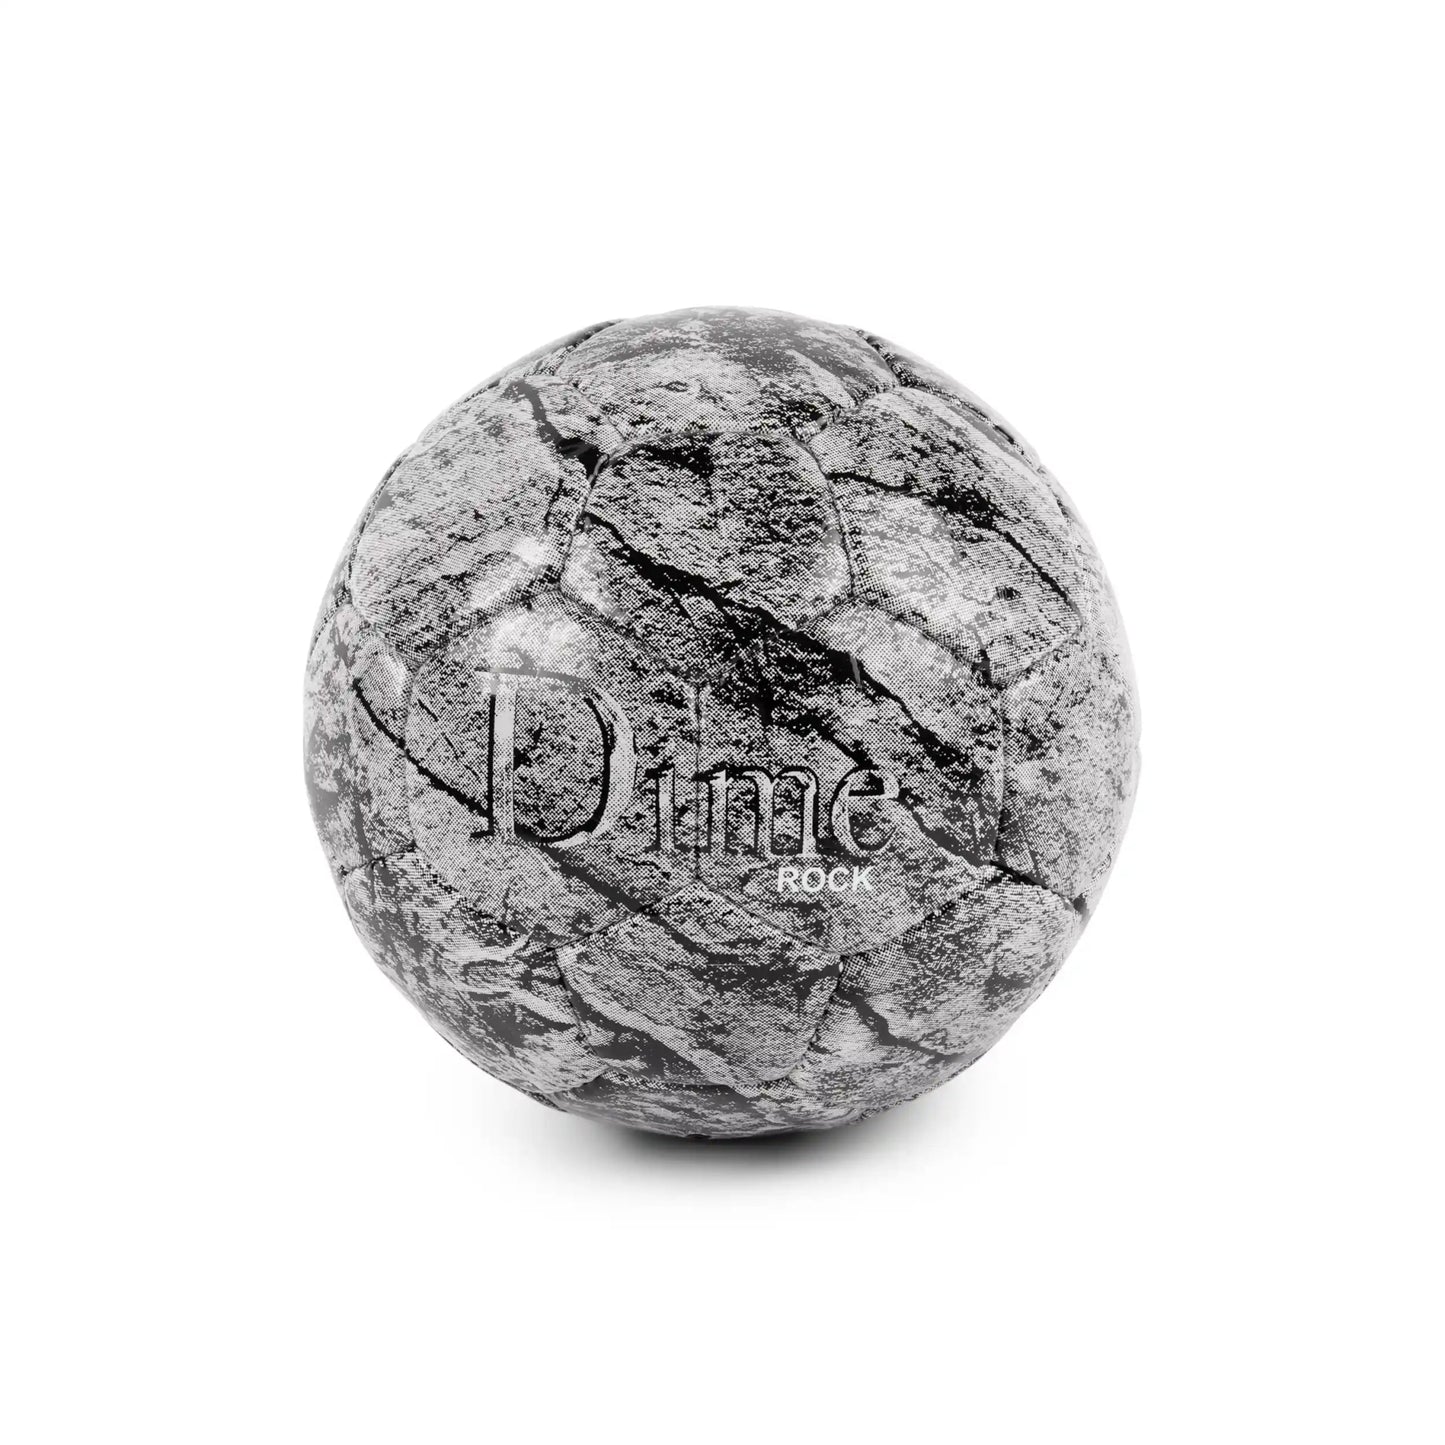 Dime Rock Soccer Ball, stone gray - Tiki Room Skateboards - 1